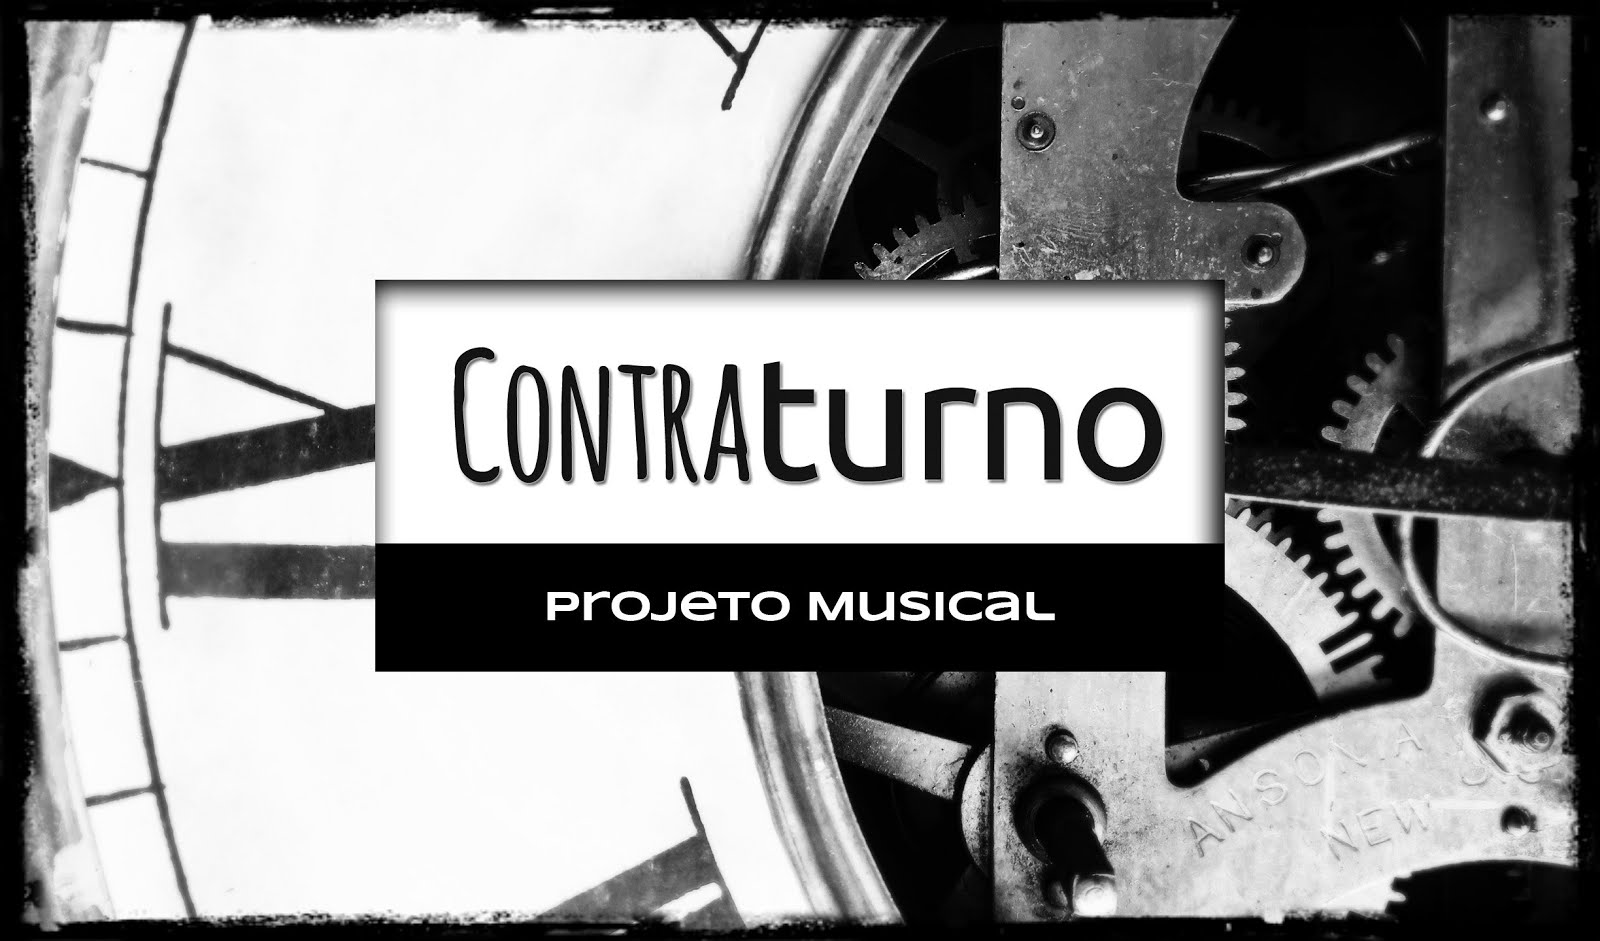 Contraturno Projeto Musical